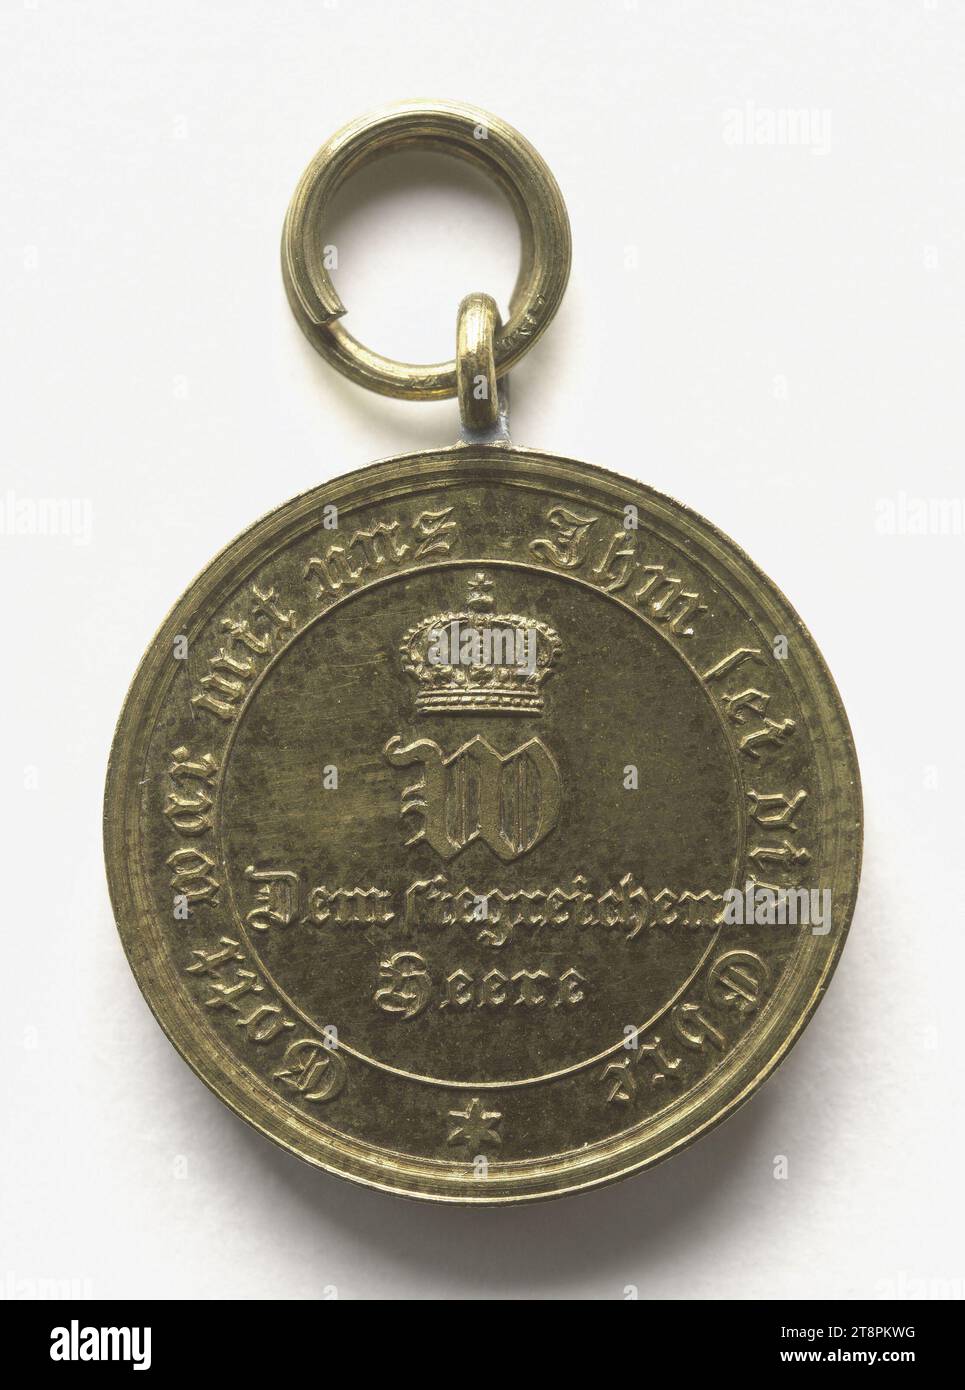 Deutsche Medaille: "Die siegreiche Armee", 1870-1871, Array, Numismatische Medaille, Medaille, Kupfer, vergoldet = Vergoldung, Abmessungen - Werk: Durchmesser: 1,8 cm, Gewicht (Typenabmessung): 3,39 g Stockfoto